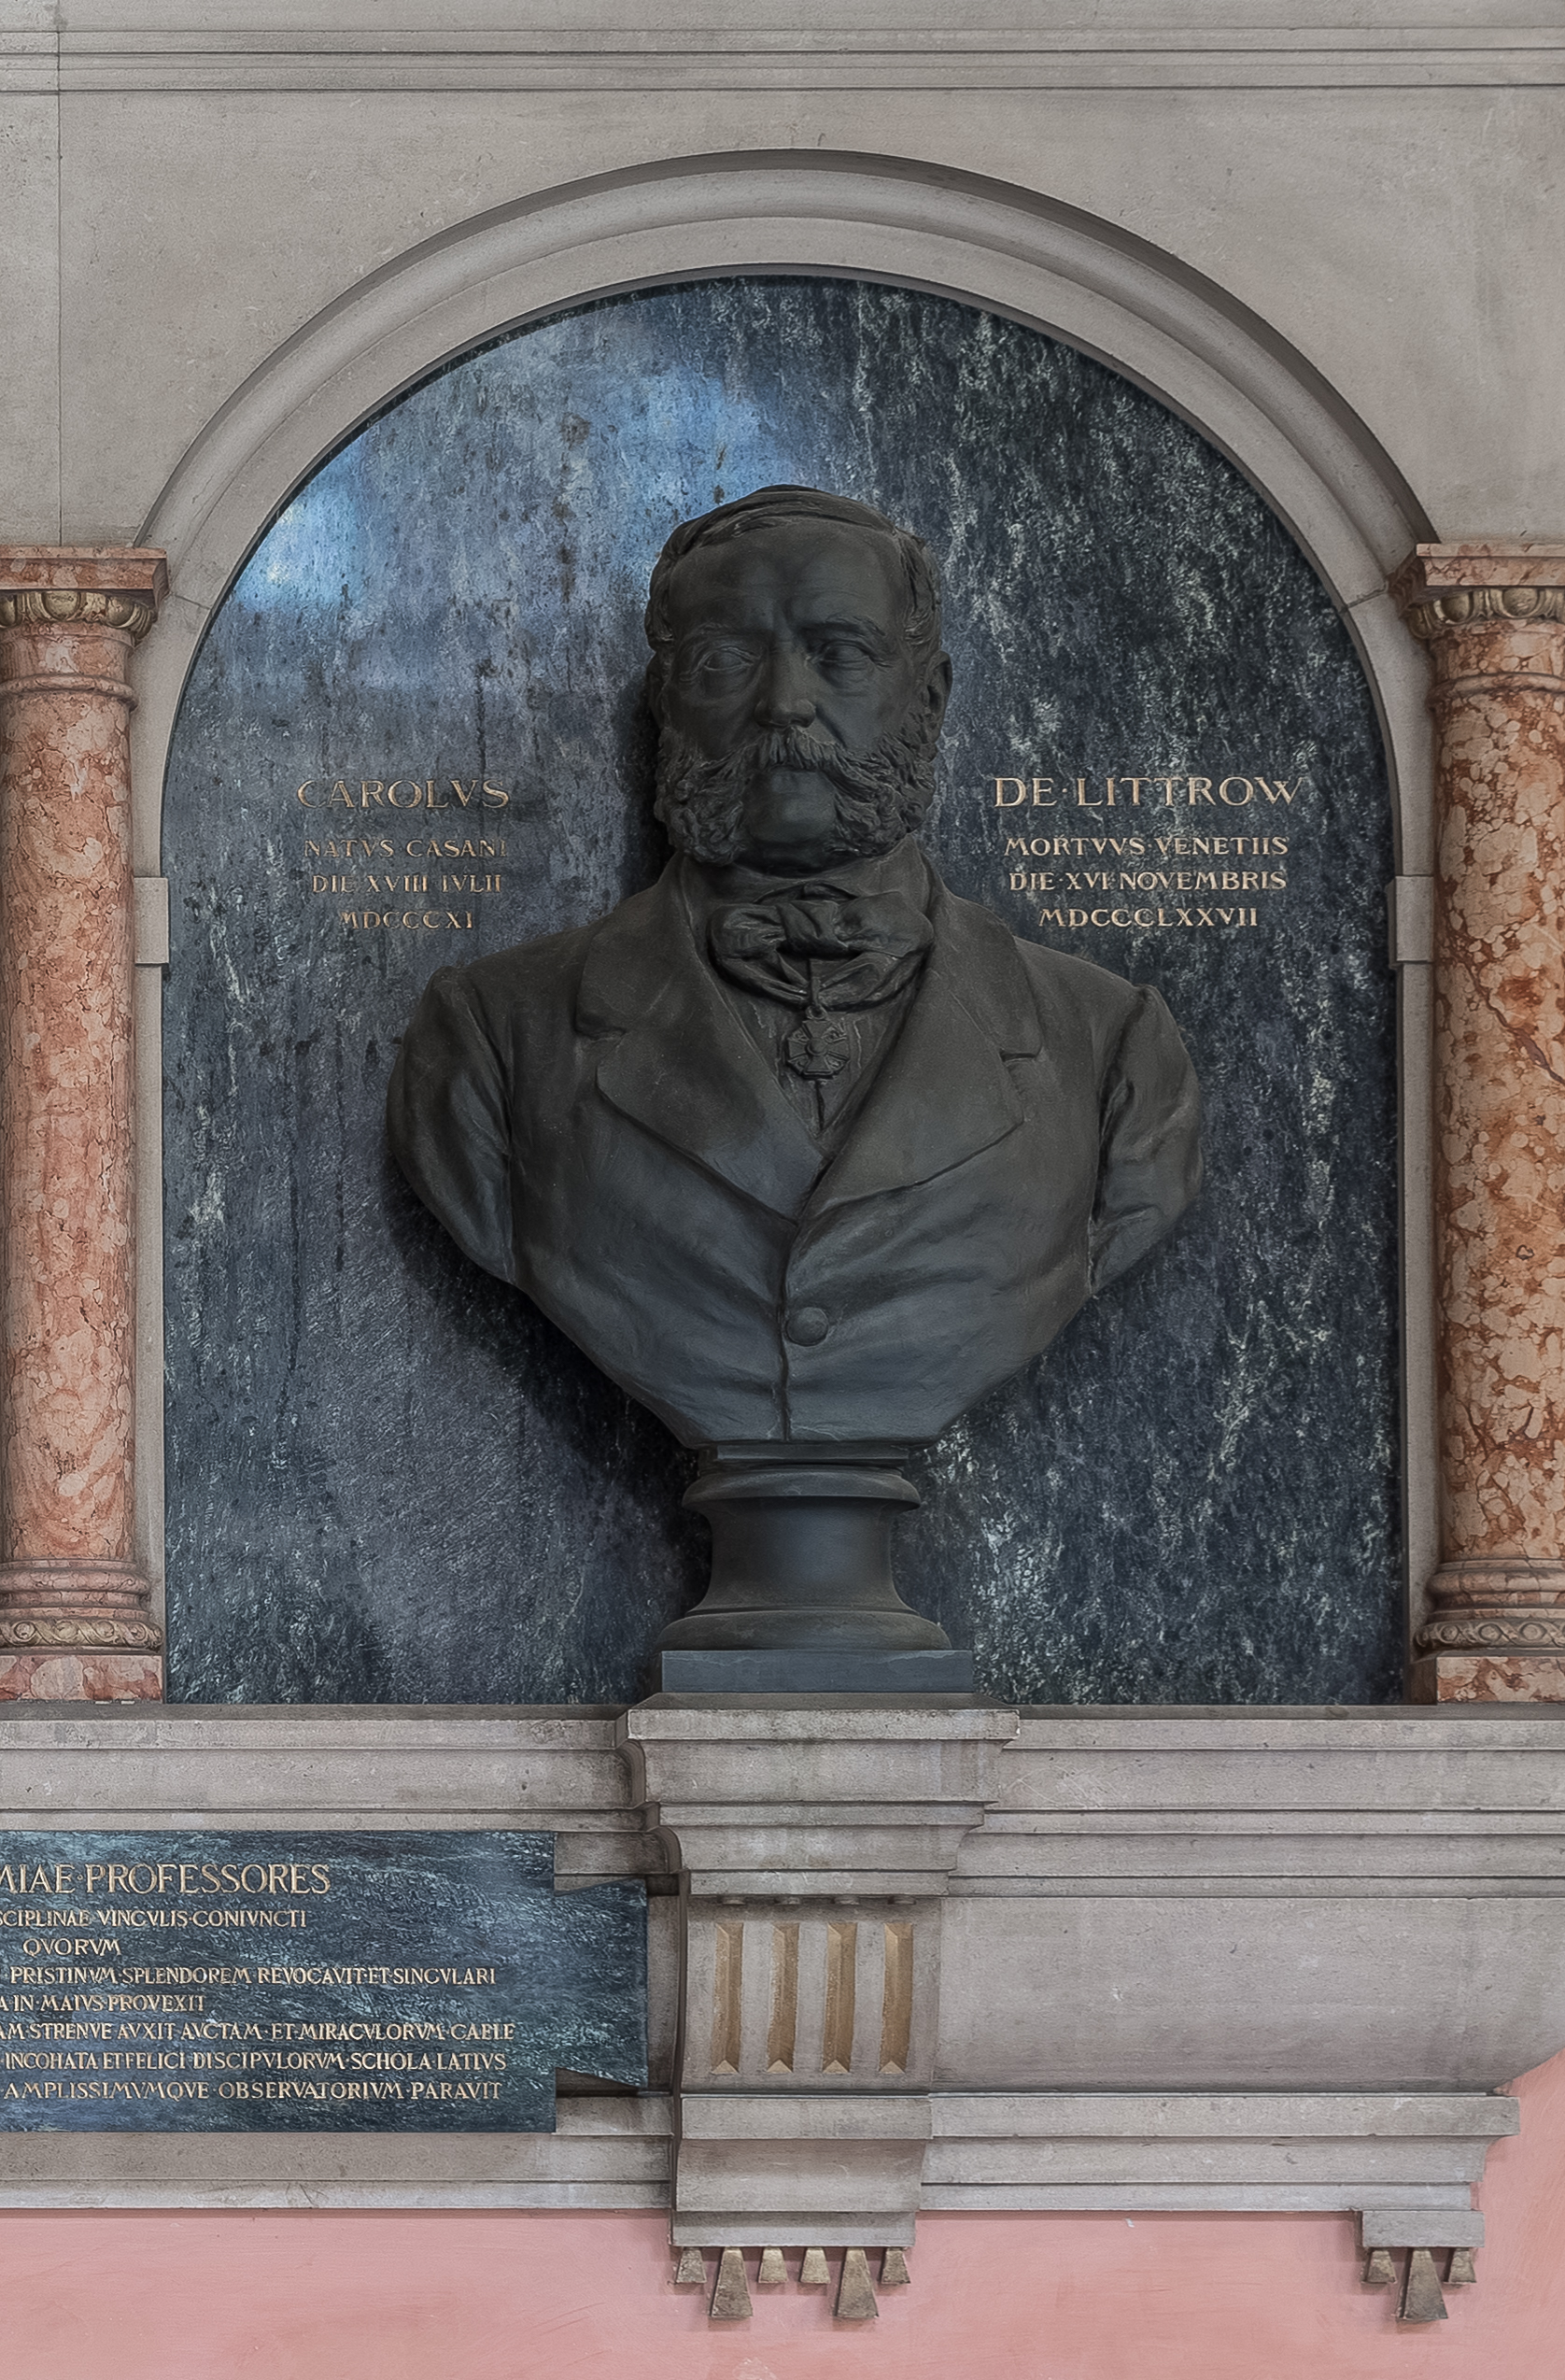 Karl von Littrow (1811-1877), Nr 96 bust (bronze) in the Arkadenhof of the University of Vienna-2380-HDR